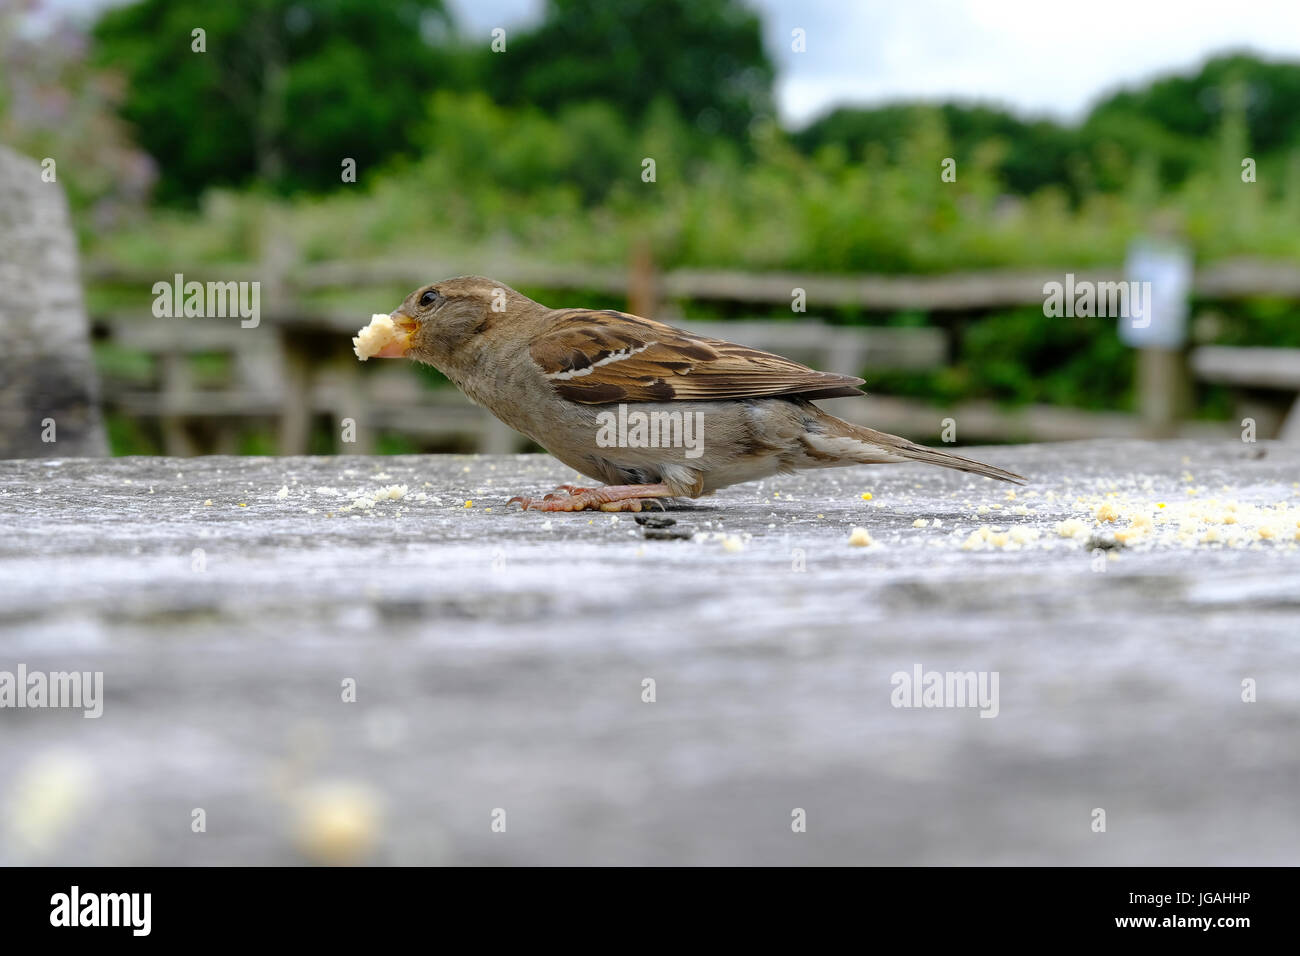 Sussex, UK. Sparrow commun ramasser des miettes laissées sur une table de pique-nique. Banque D'Images